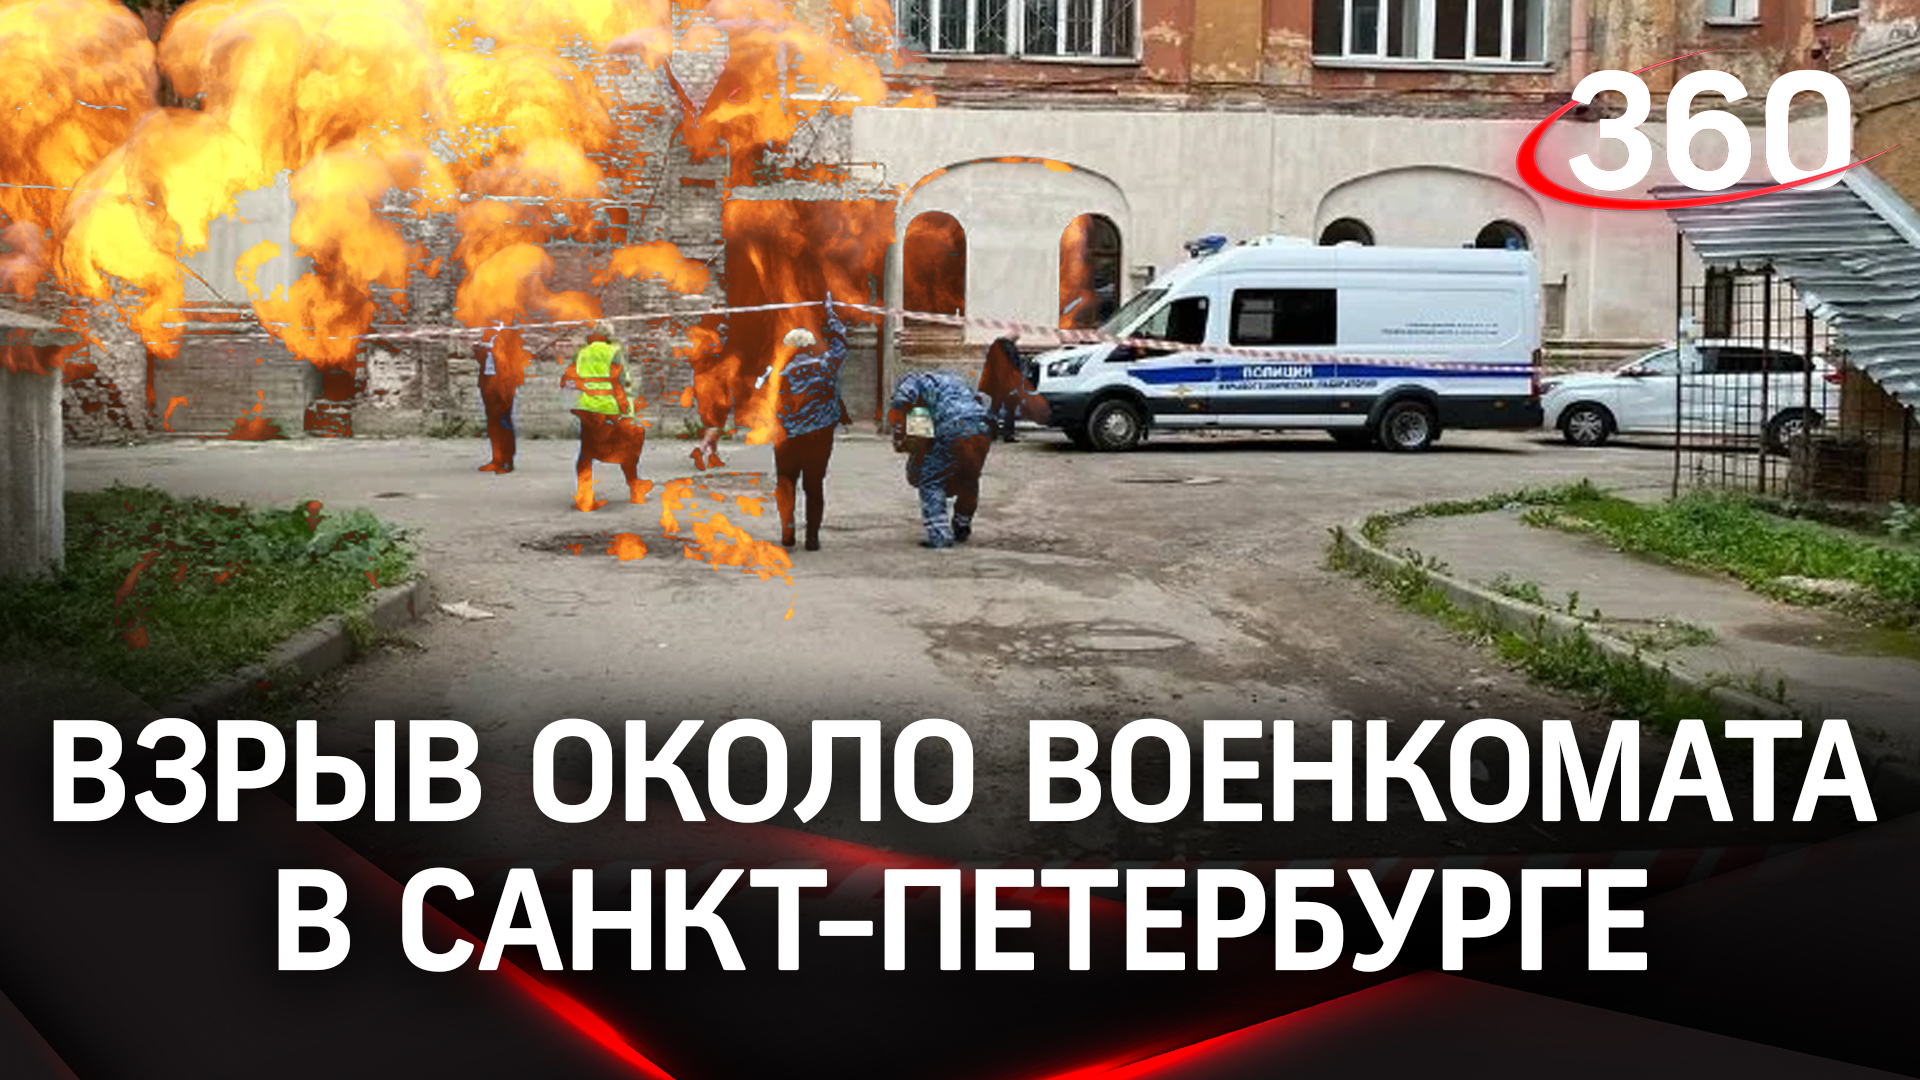 Видео взрыва военкомата в Петербурге